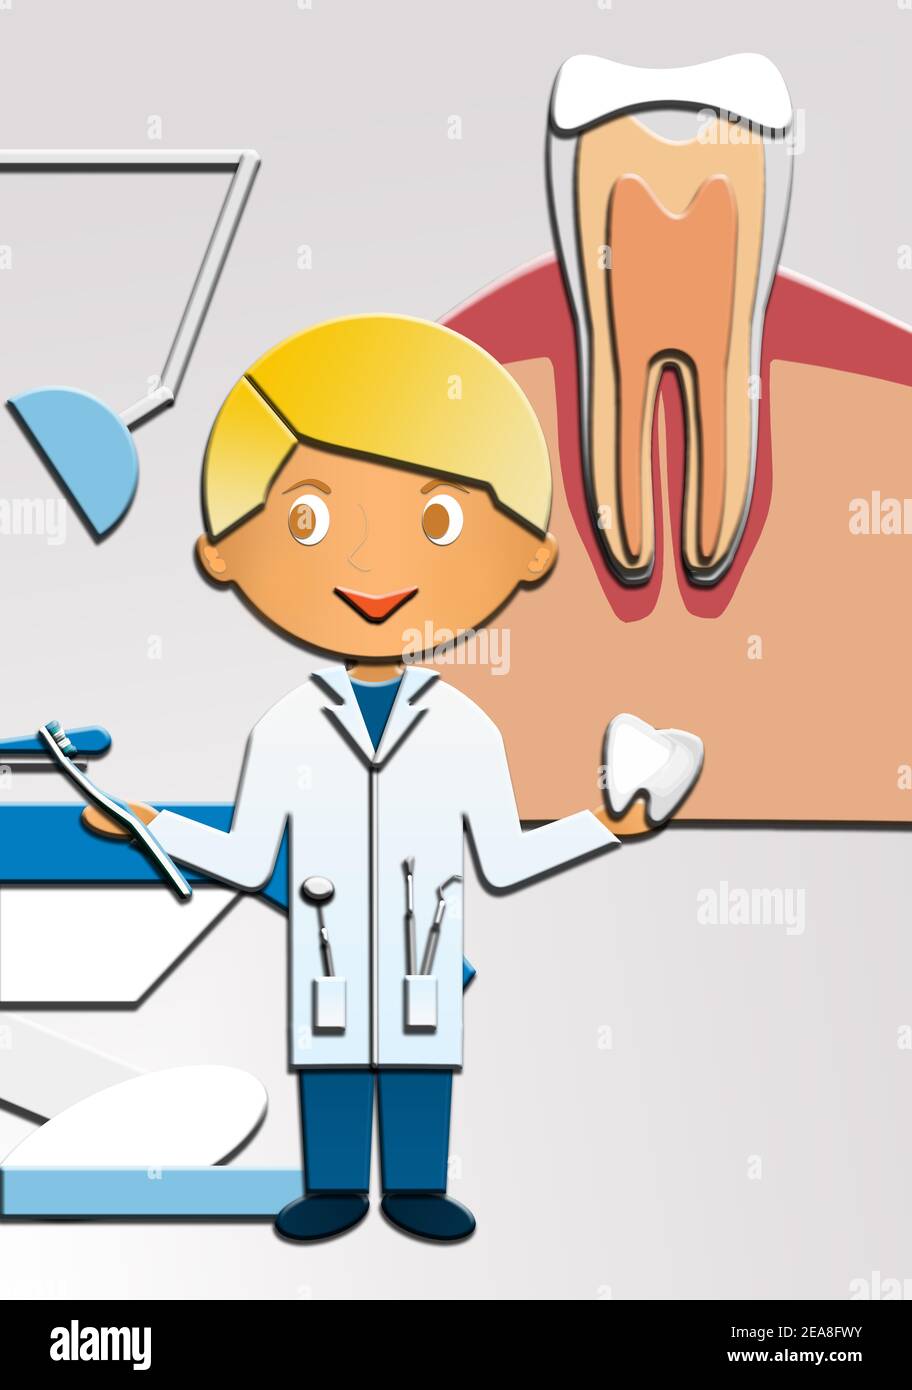 Karikatur eines niedlichen glücklichen Zahnarzt, hält einen Zahn und eine Zahnbürste. Diese Illustration ist Teil einer Sammlung verschiedener Berufe. Stockfoto